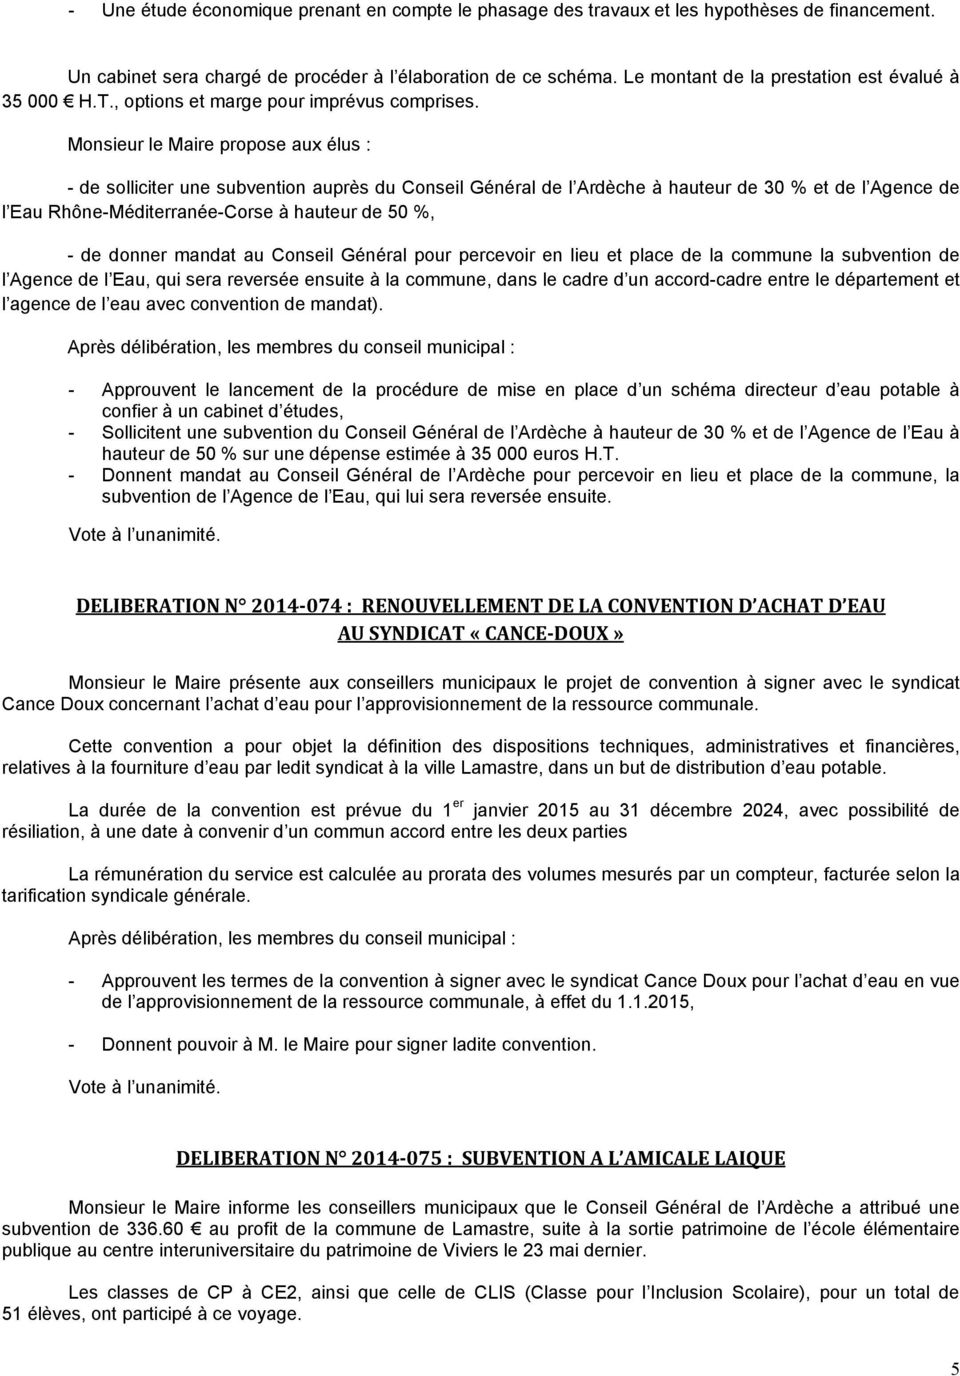 Monsieur le Maire propose aux élus : - de solliciter une subvention auprès du Conseil Général de l Ardèche à hauteur de 30 % et de l Agence de l Eau Rhône-Méditerranée-Corse à hauteur de 50 %, - de